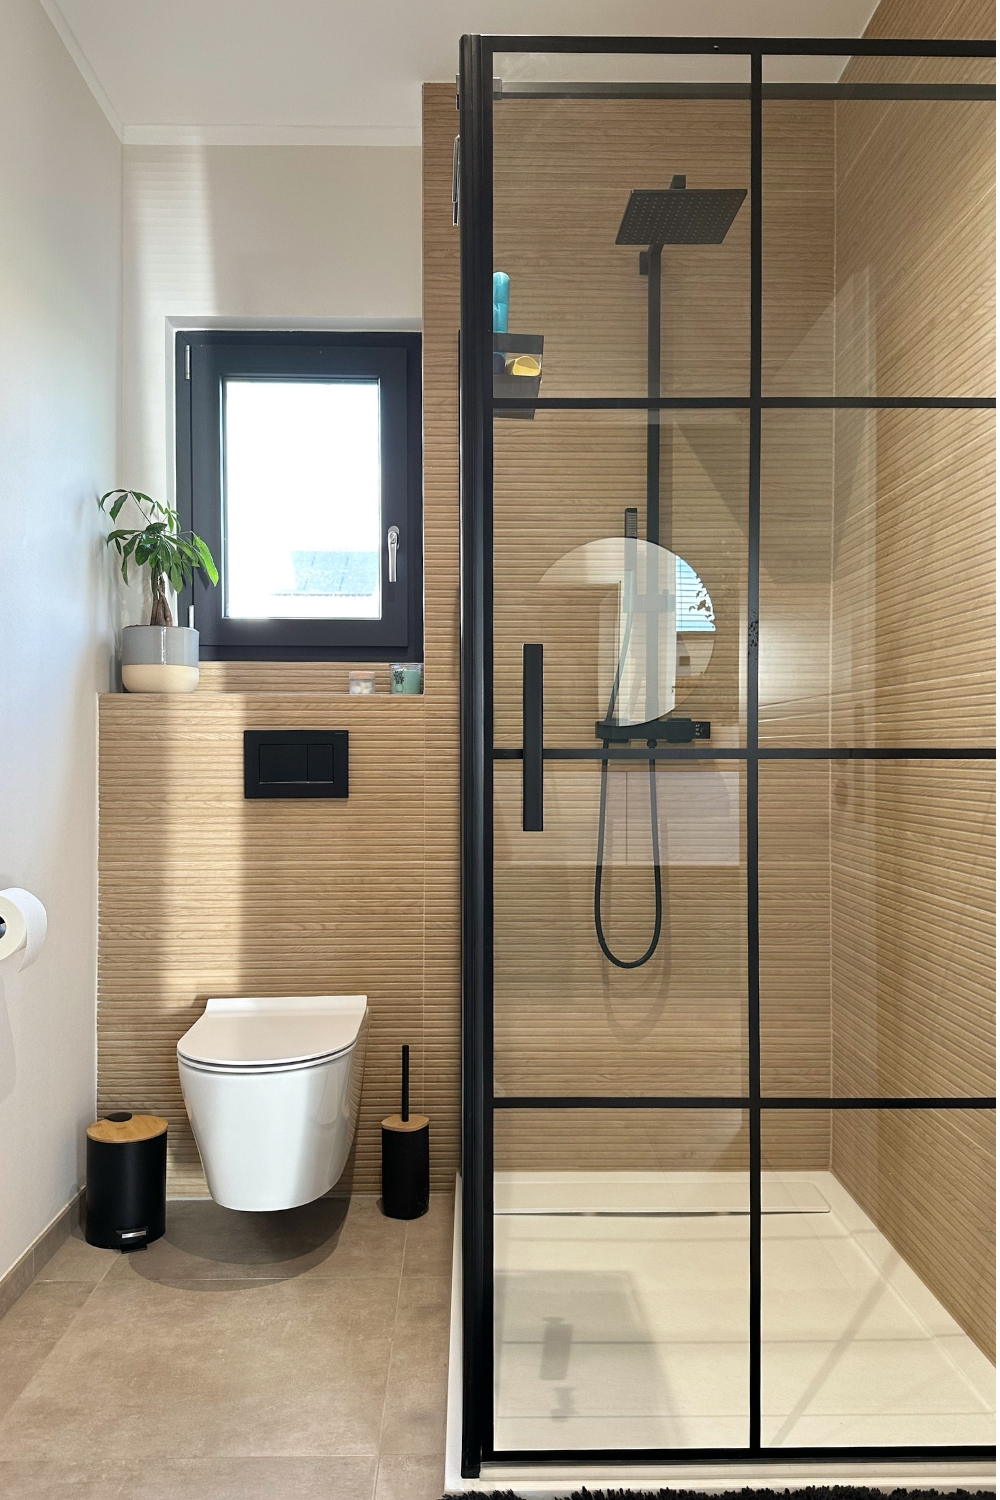 Einblicke in unser Gäste Badezimmer mit Dusche 
#kleinesbad #gästebad #hausbau #holzfliesen #gästewc